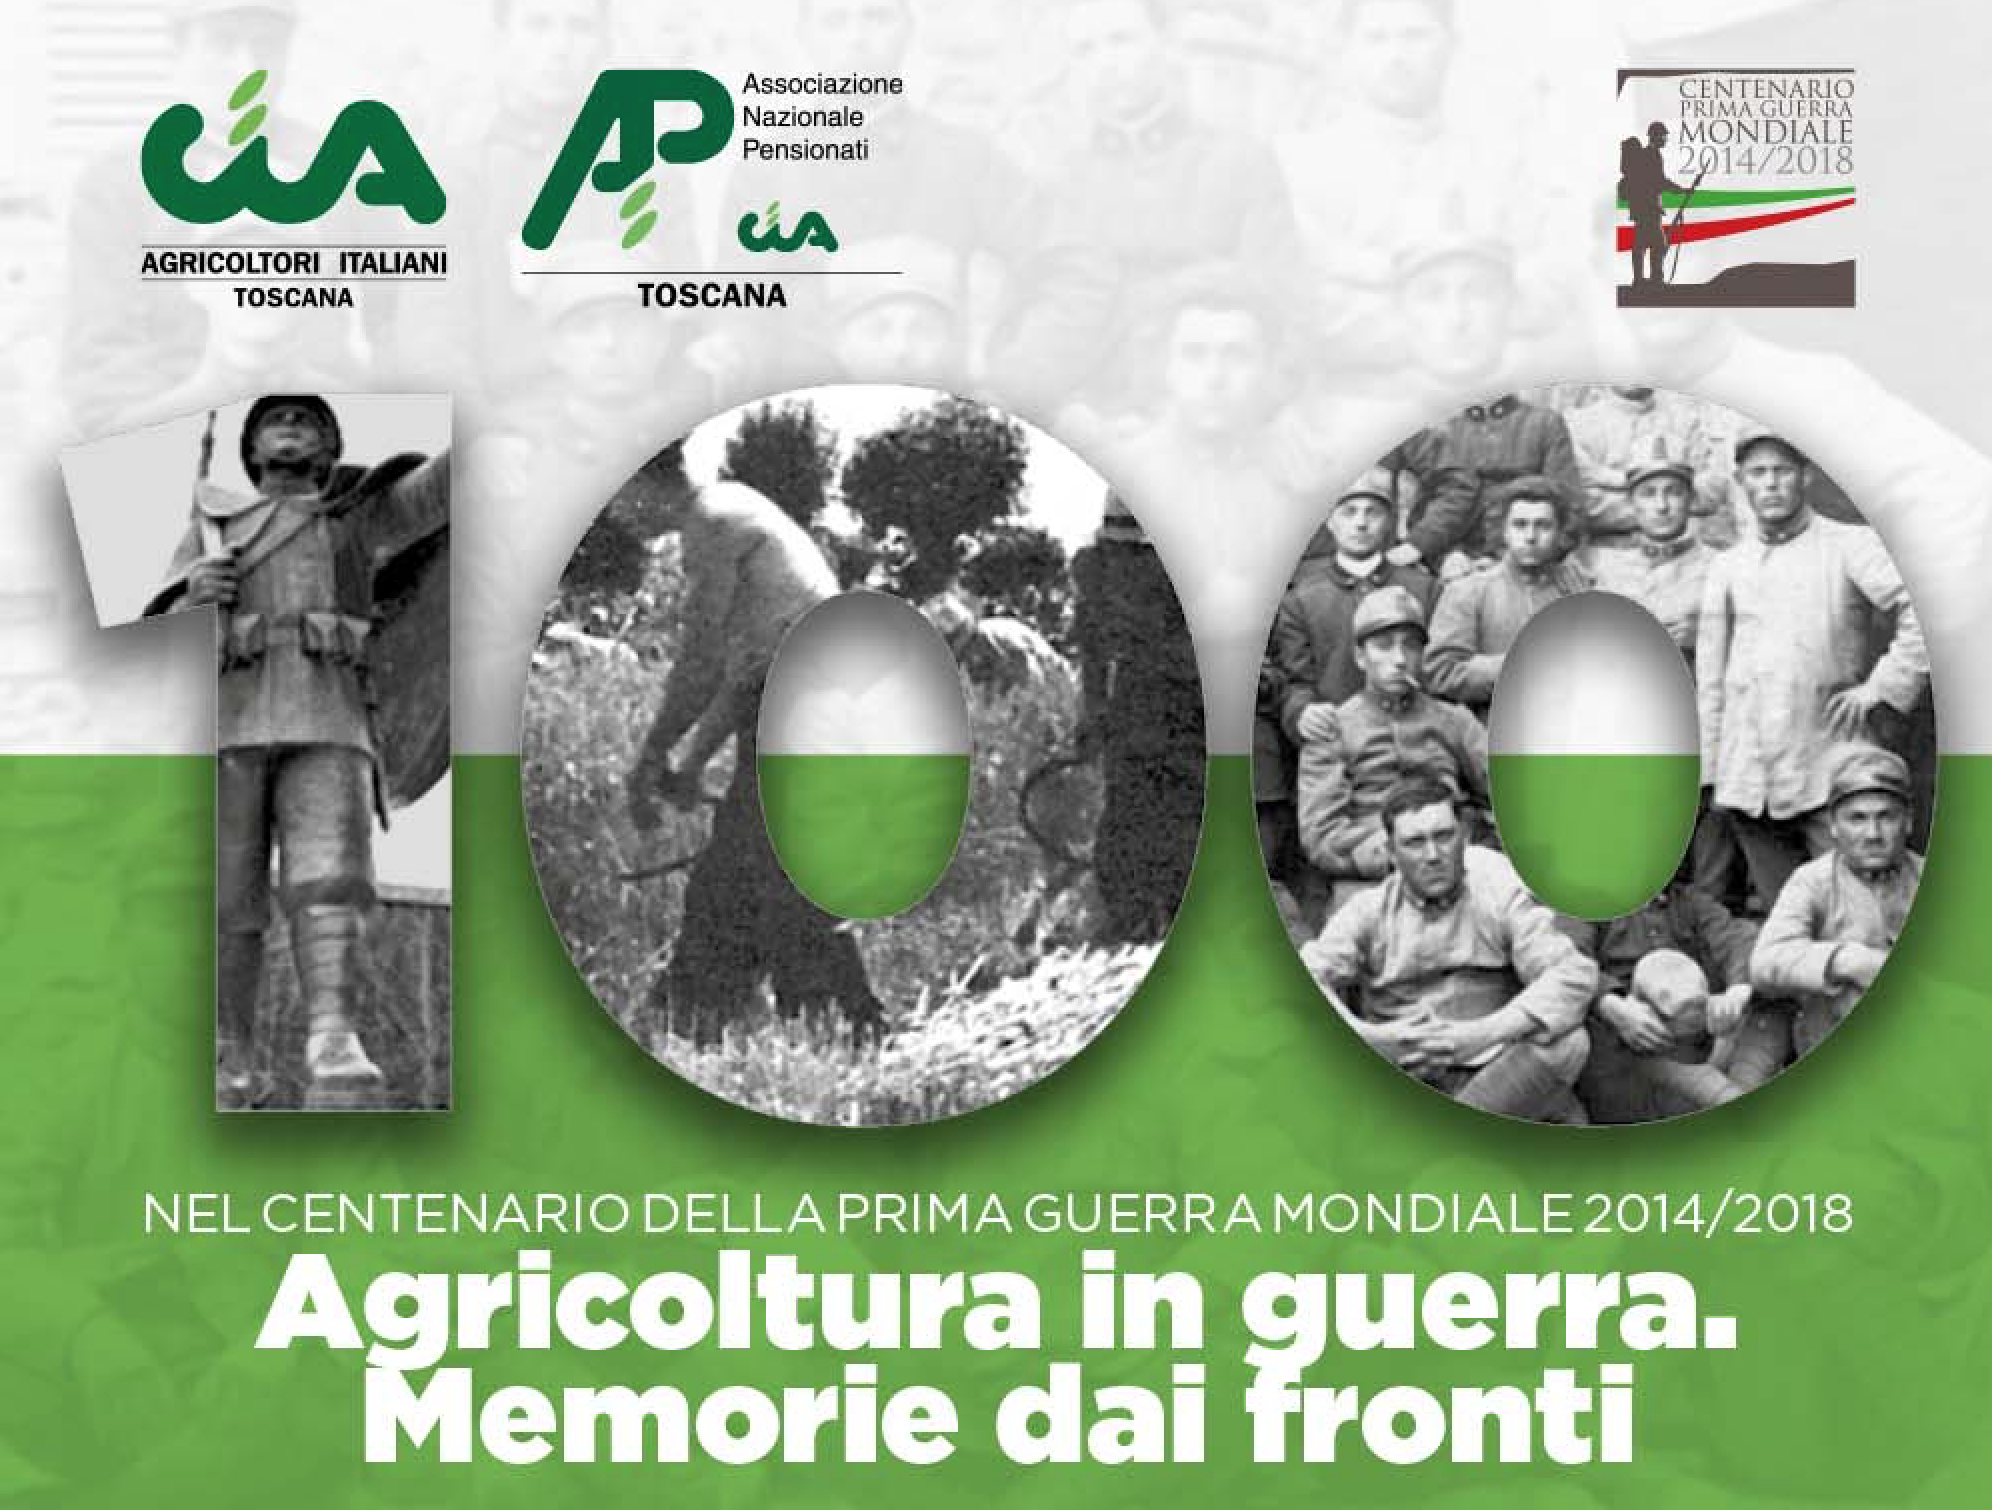 Agricoltura in guerra. Memorie dai fronti. Lunedì 8 ottobre l’iniziativa AnpCia Toscana